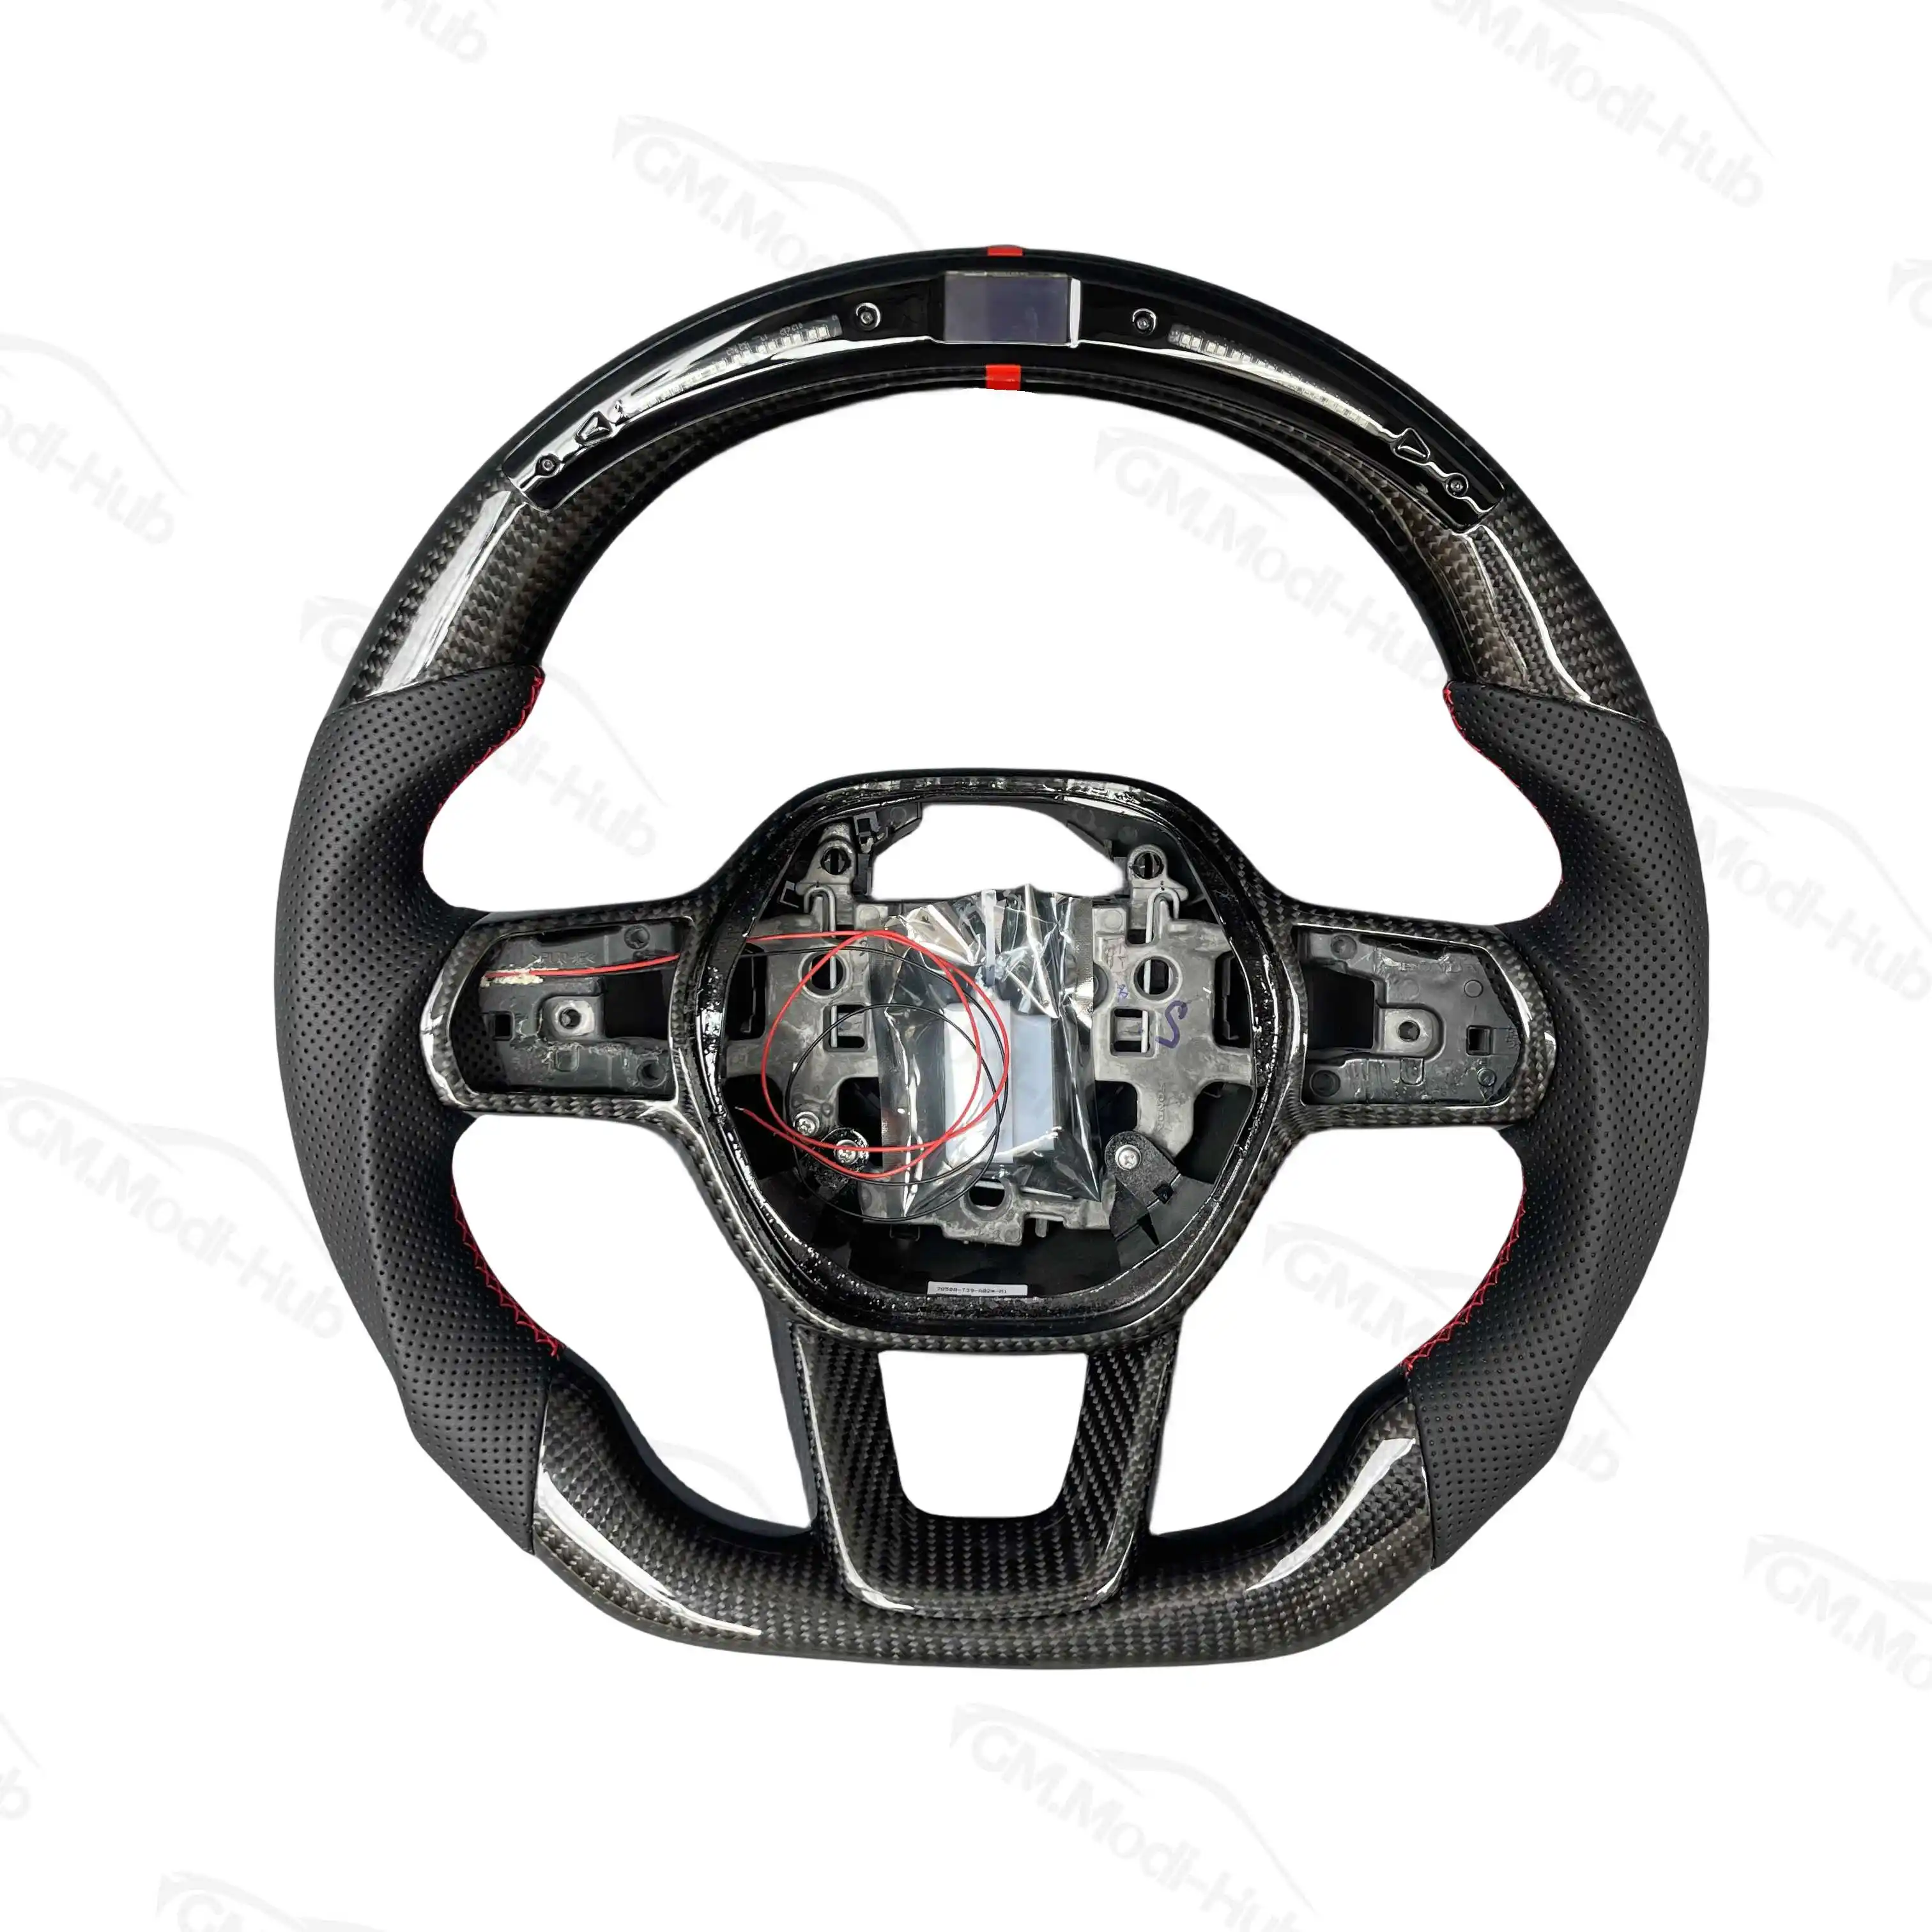 GM.Modi Hub volante in fibra di carbonio con Display a Led reale personalizzato per 11th gen Civic 2022-2023 tipo R FL5 SI /Acura Integra